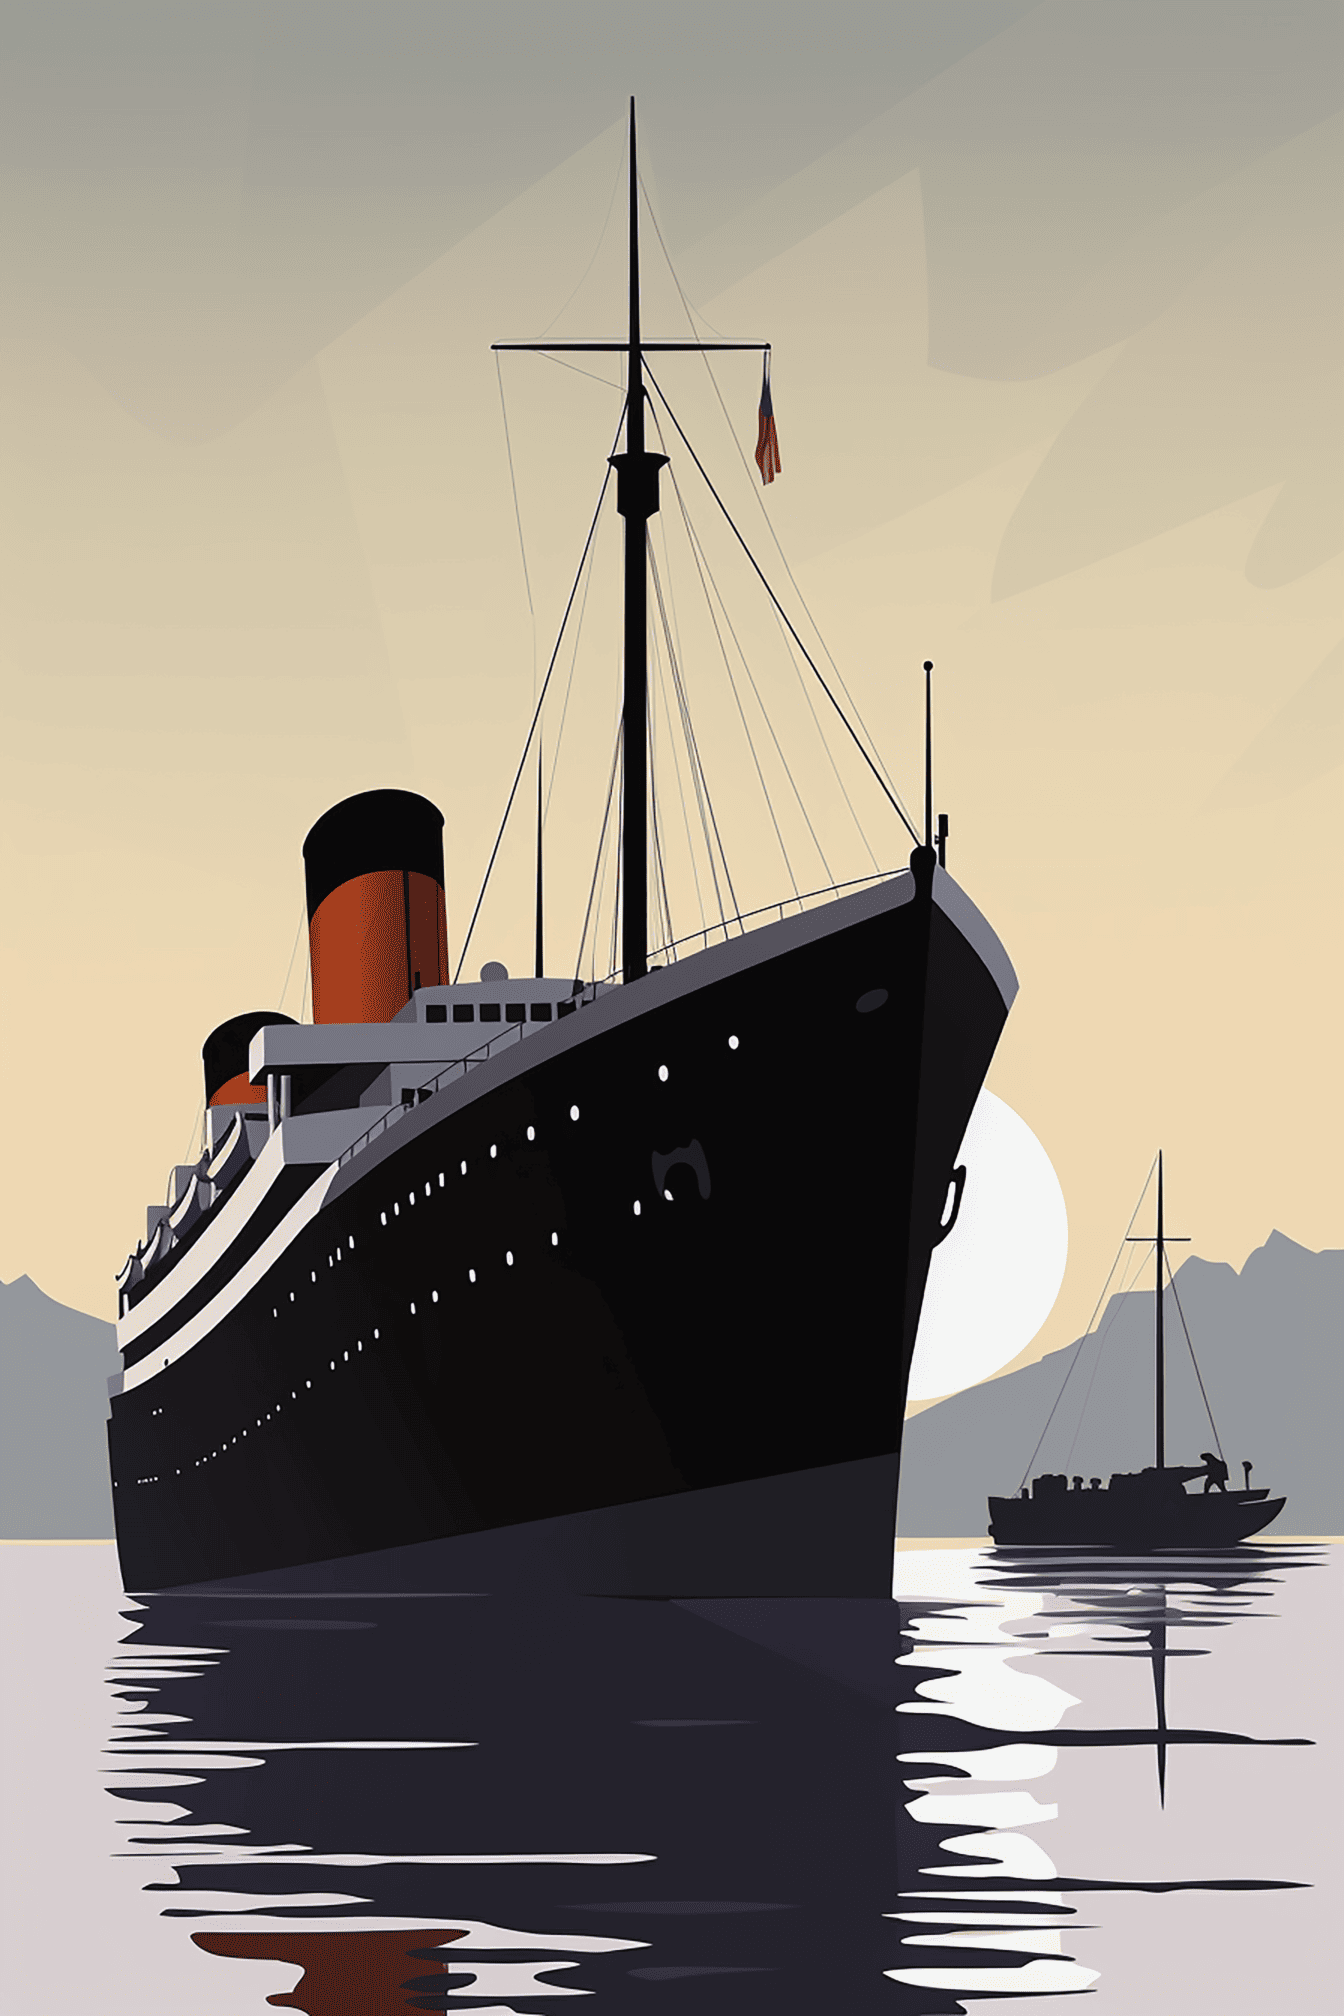 Hình minh họa tàu hơi nước Titanic với hình bóng của thuyền đánh cá trong nền